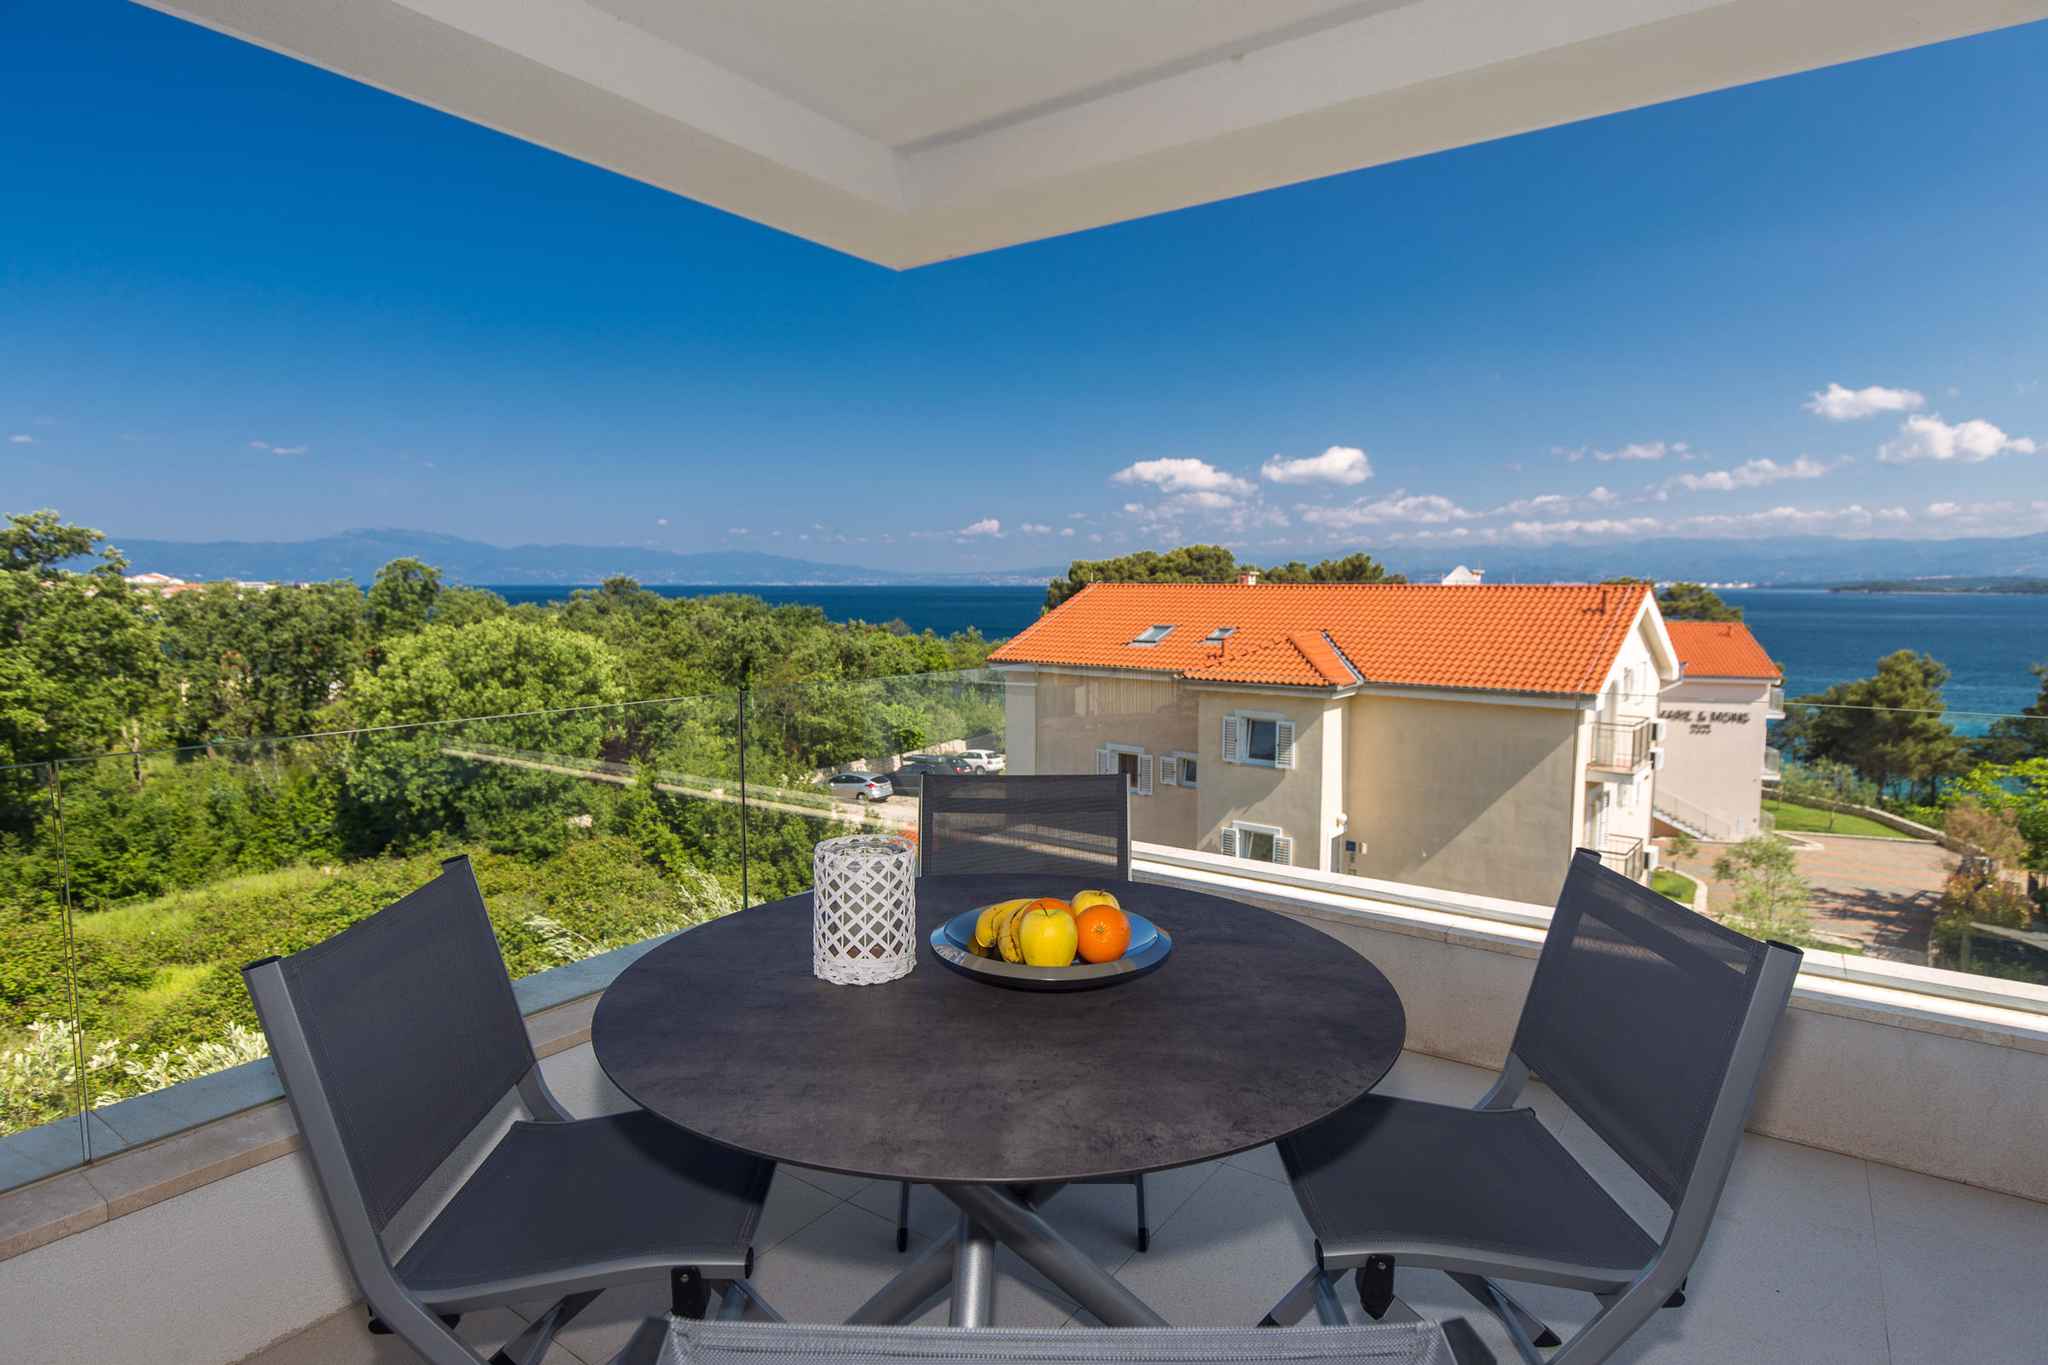 Ferienwohnung mit Balkon und Meerblick   kroatische Inseln